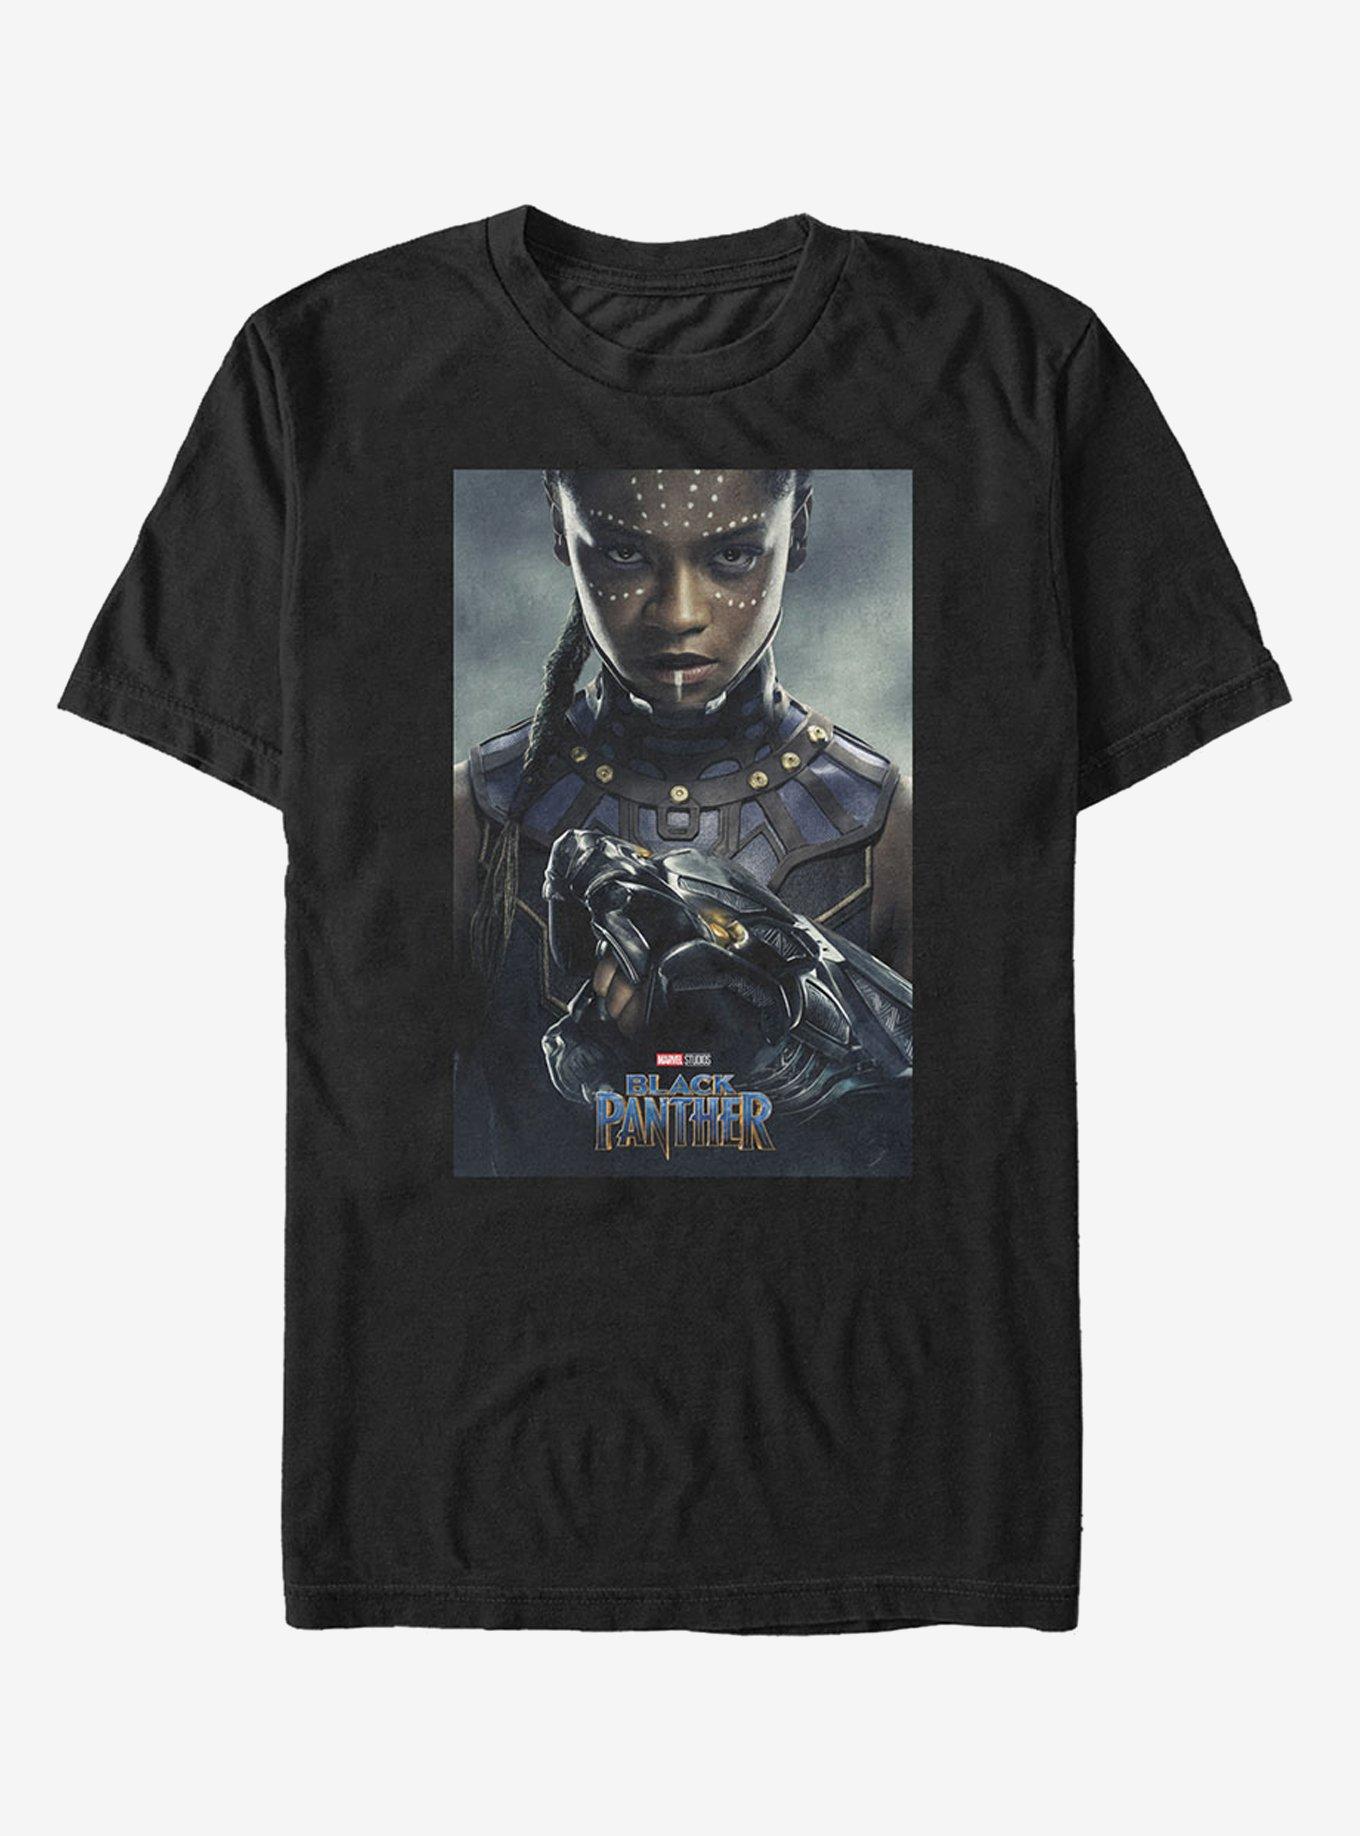 Marvel Black Panther 2018 Shuri Poster Pose T-Shirt